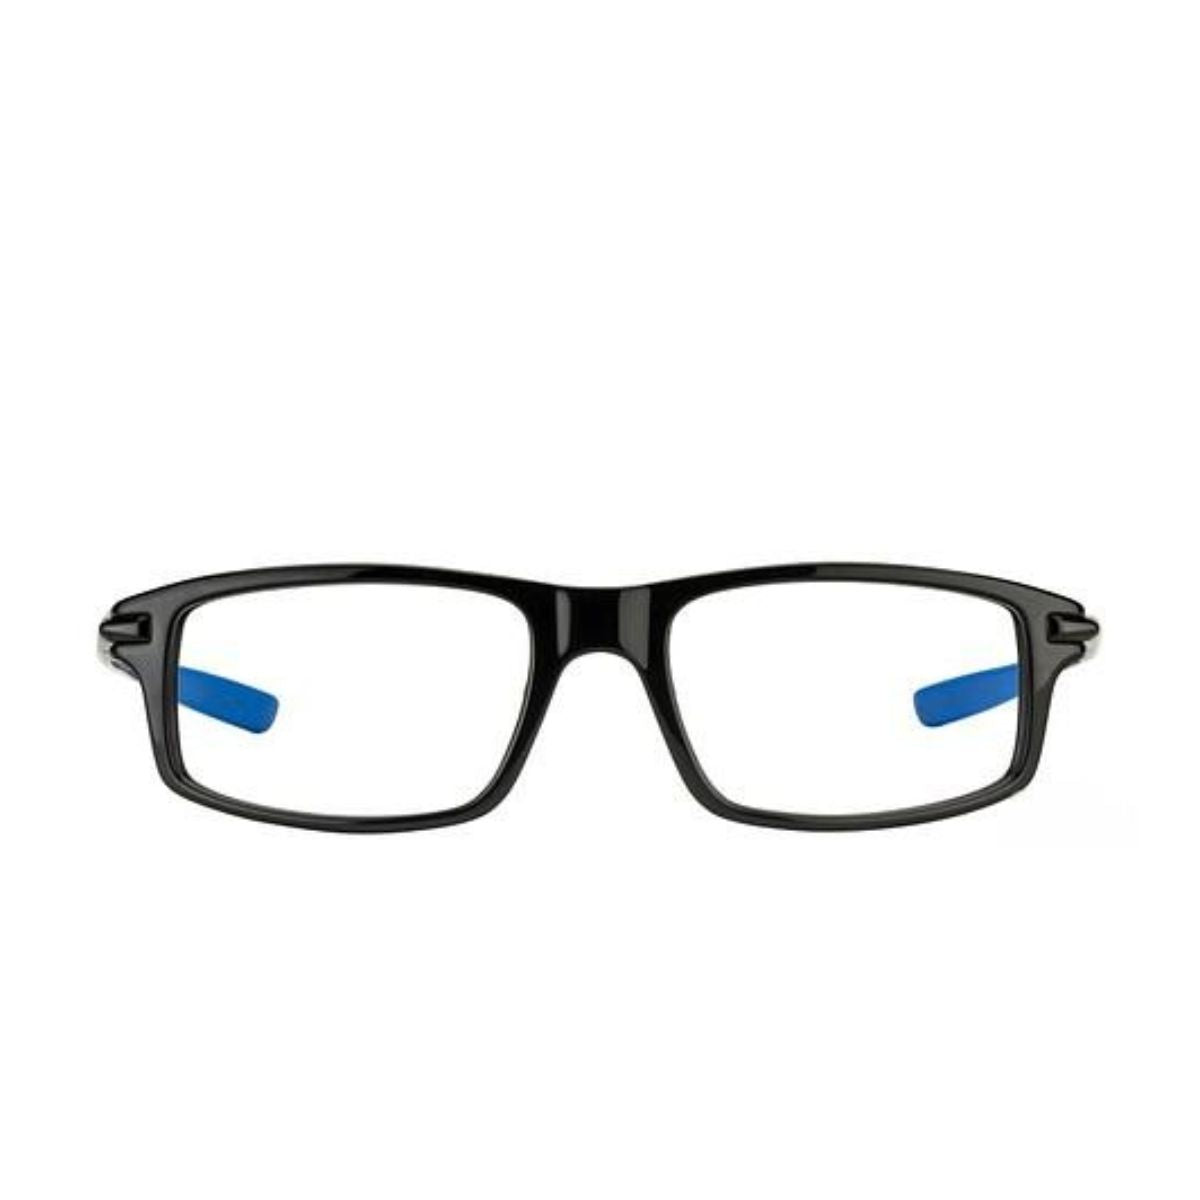 "buy Oakley 1100 0453 rectangle eyeglasses frame for men's at optorium"